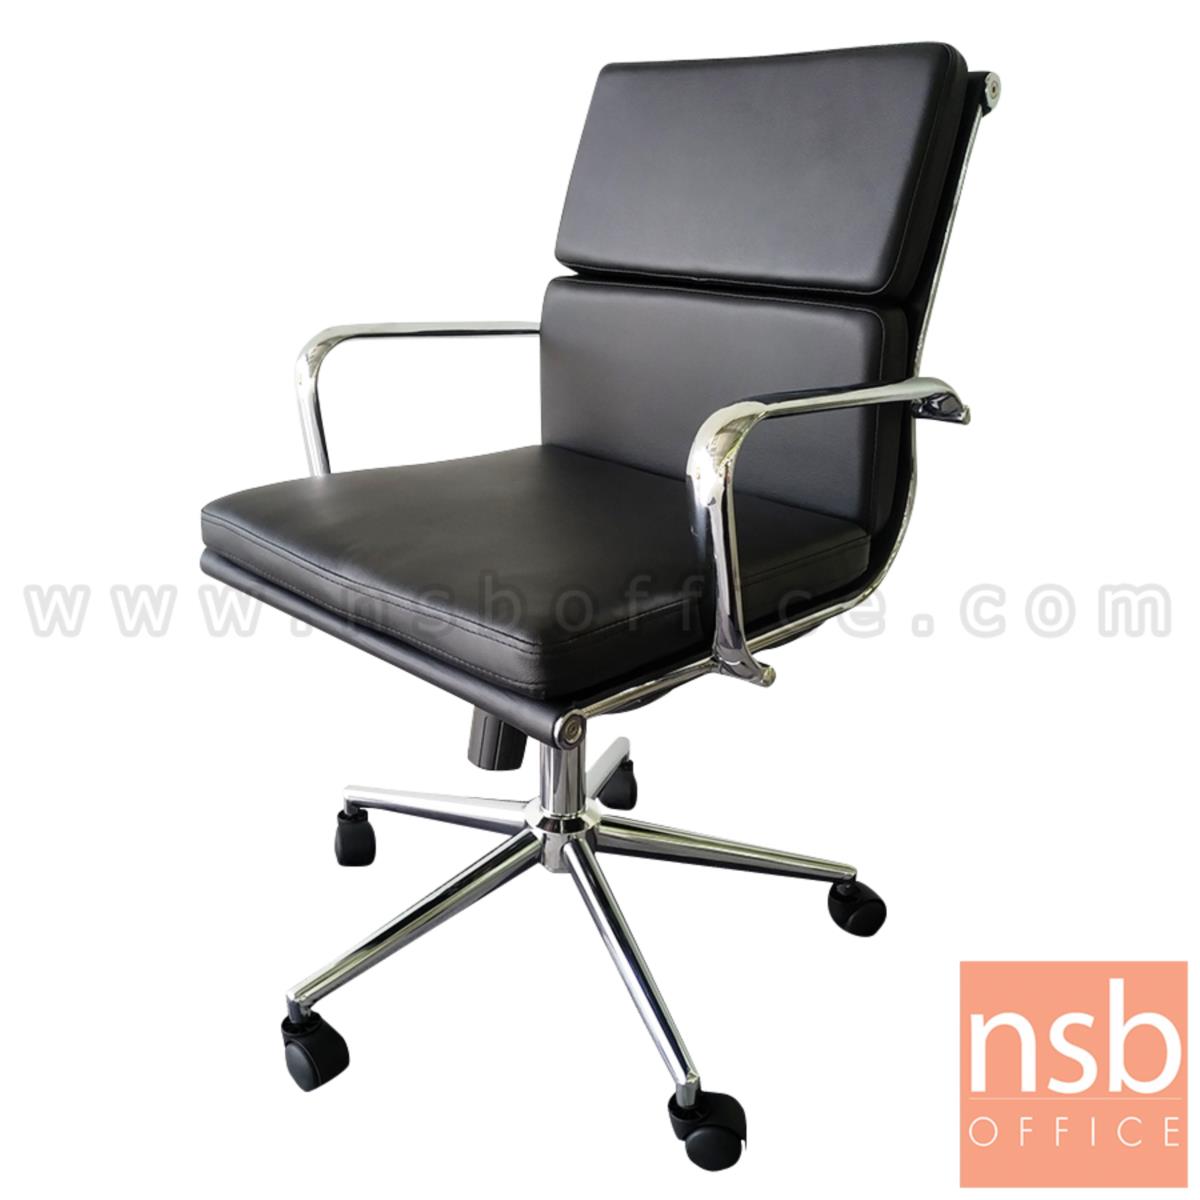 B03A507:เก้าอี้สำนักงาน รุ่น  Pepper (เปปเปอร์)  โช๊คแก๊ส ก้อนโยก ขาเหล็กชุบโครเมี่ยม 